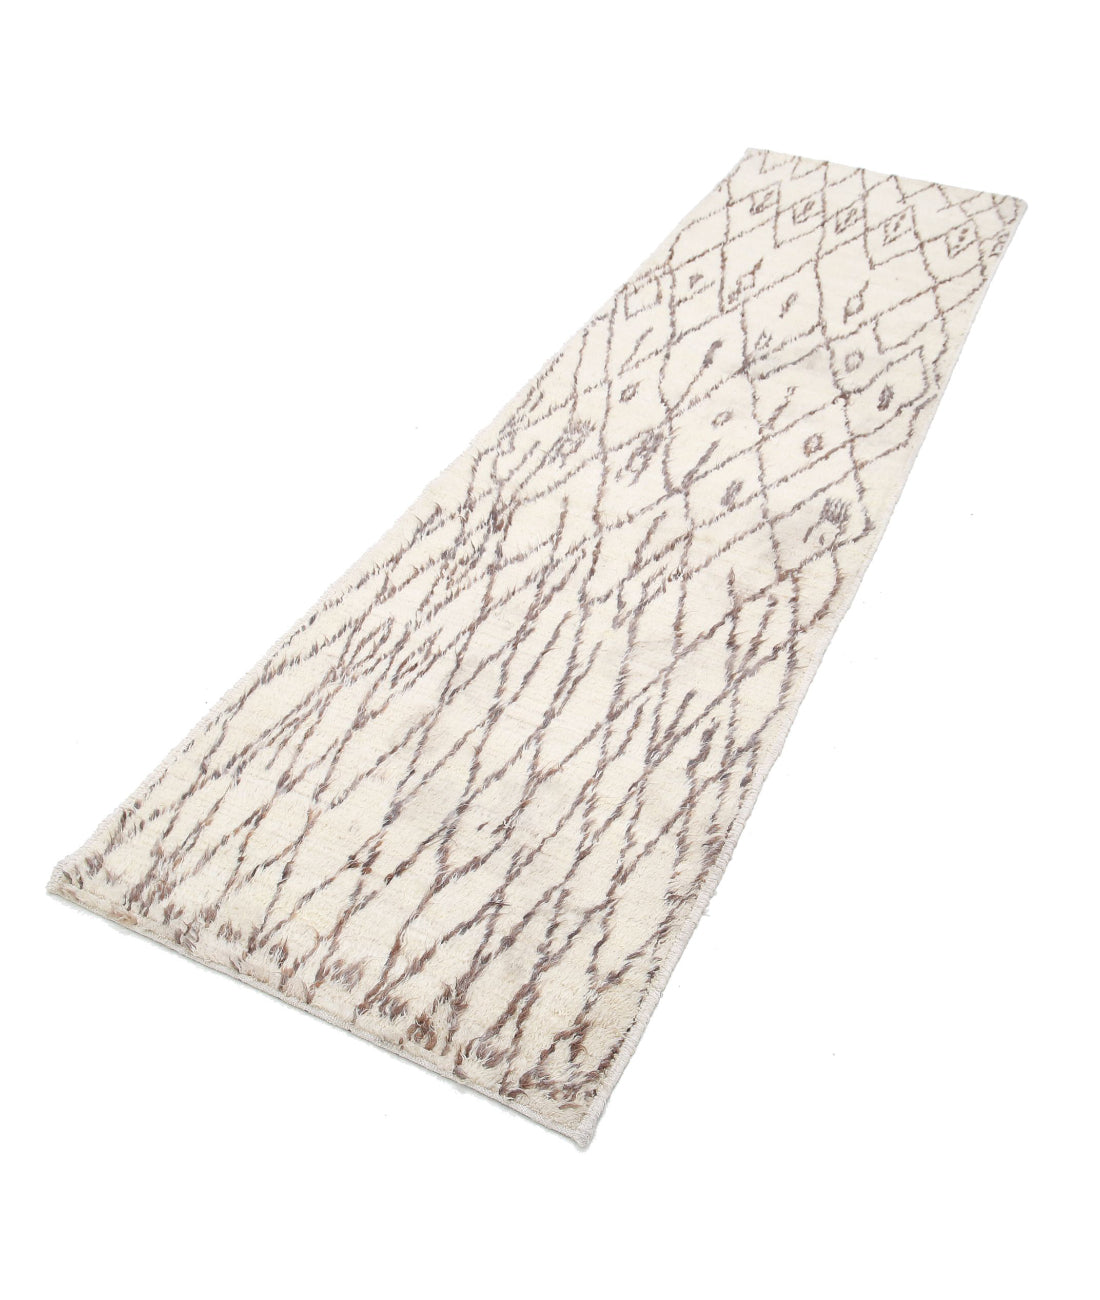 hand-knotted-morocaan-wool-rug-5013505-2.jpg